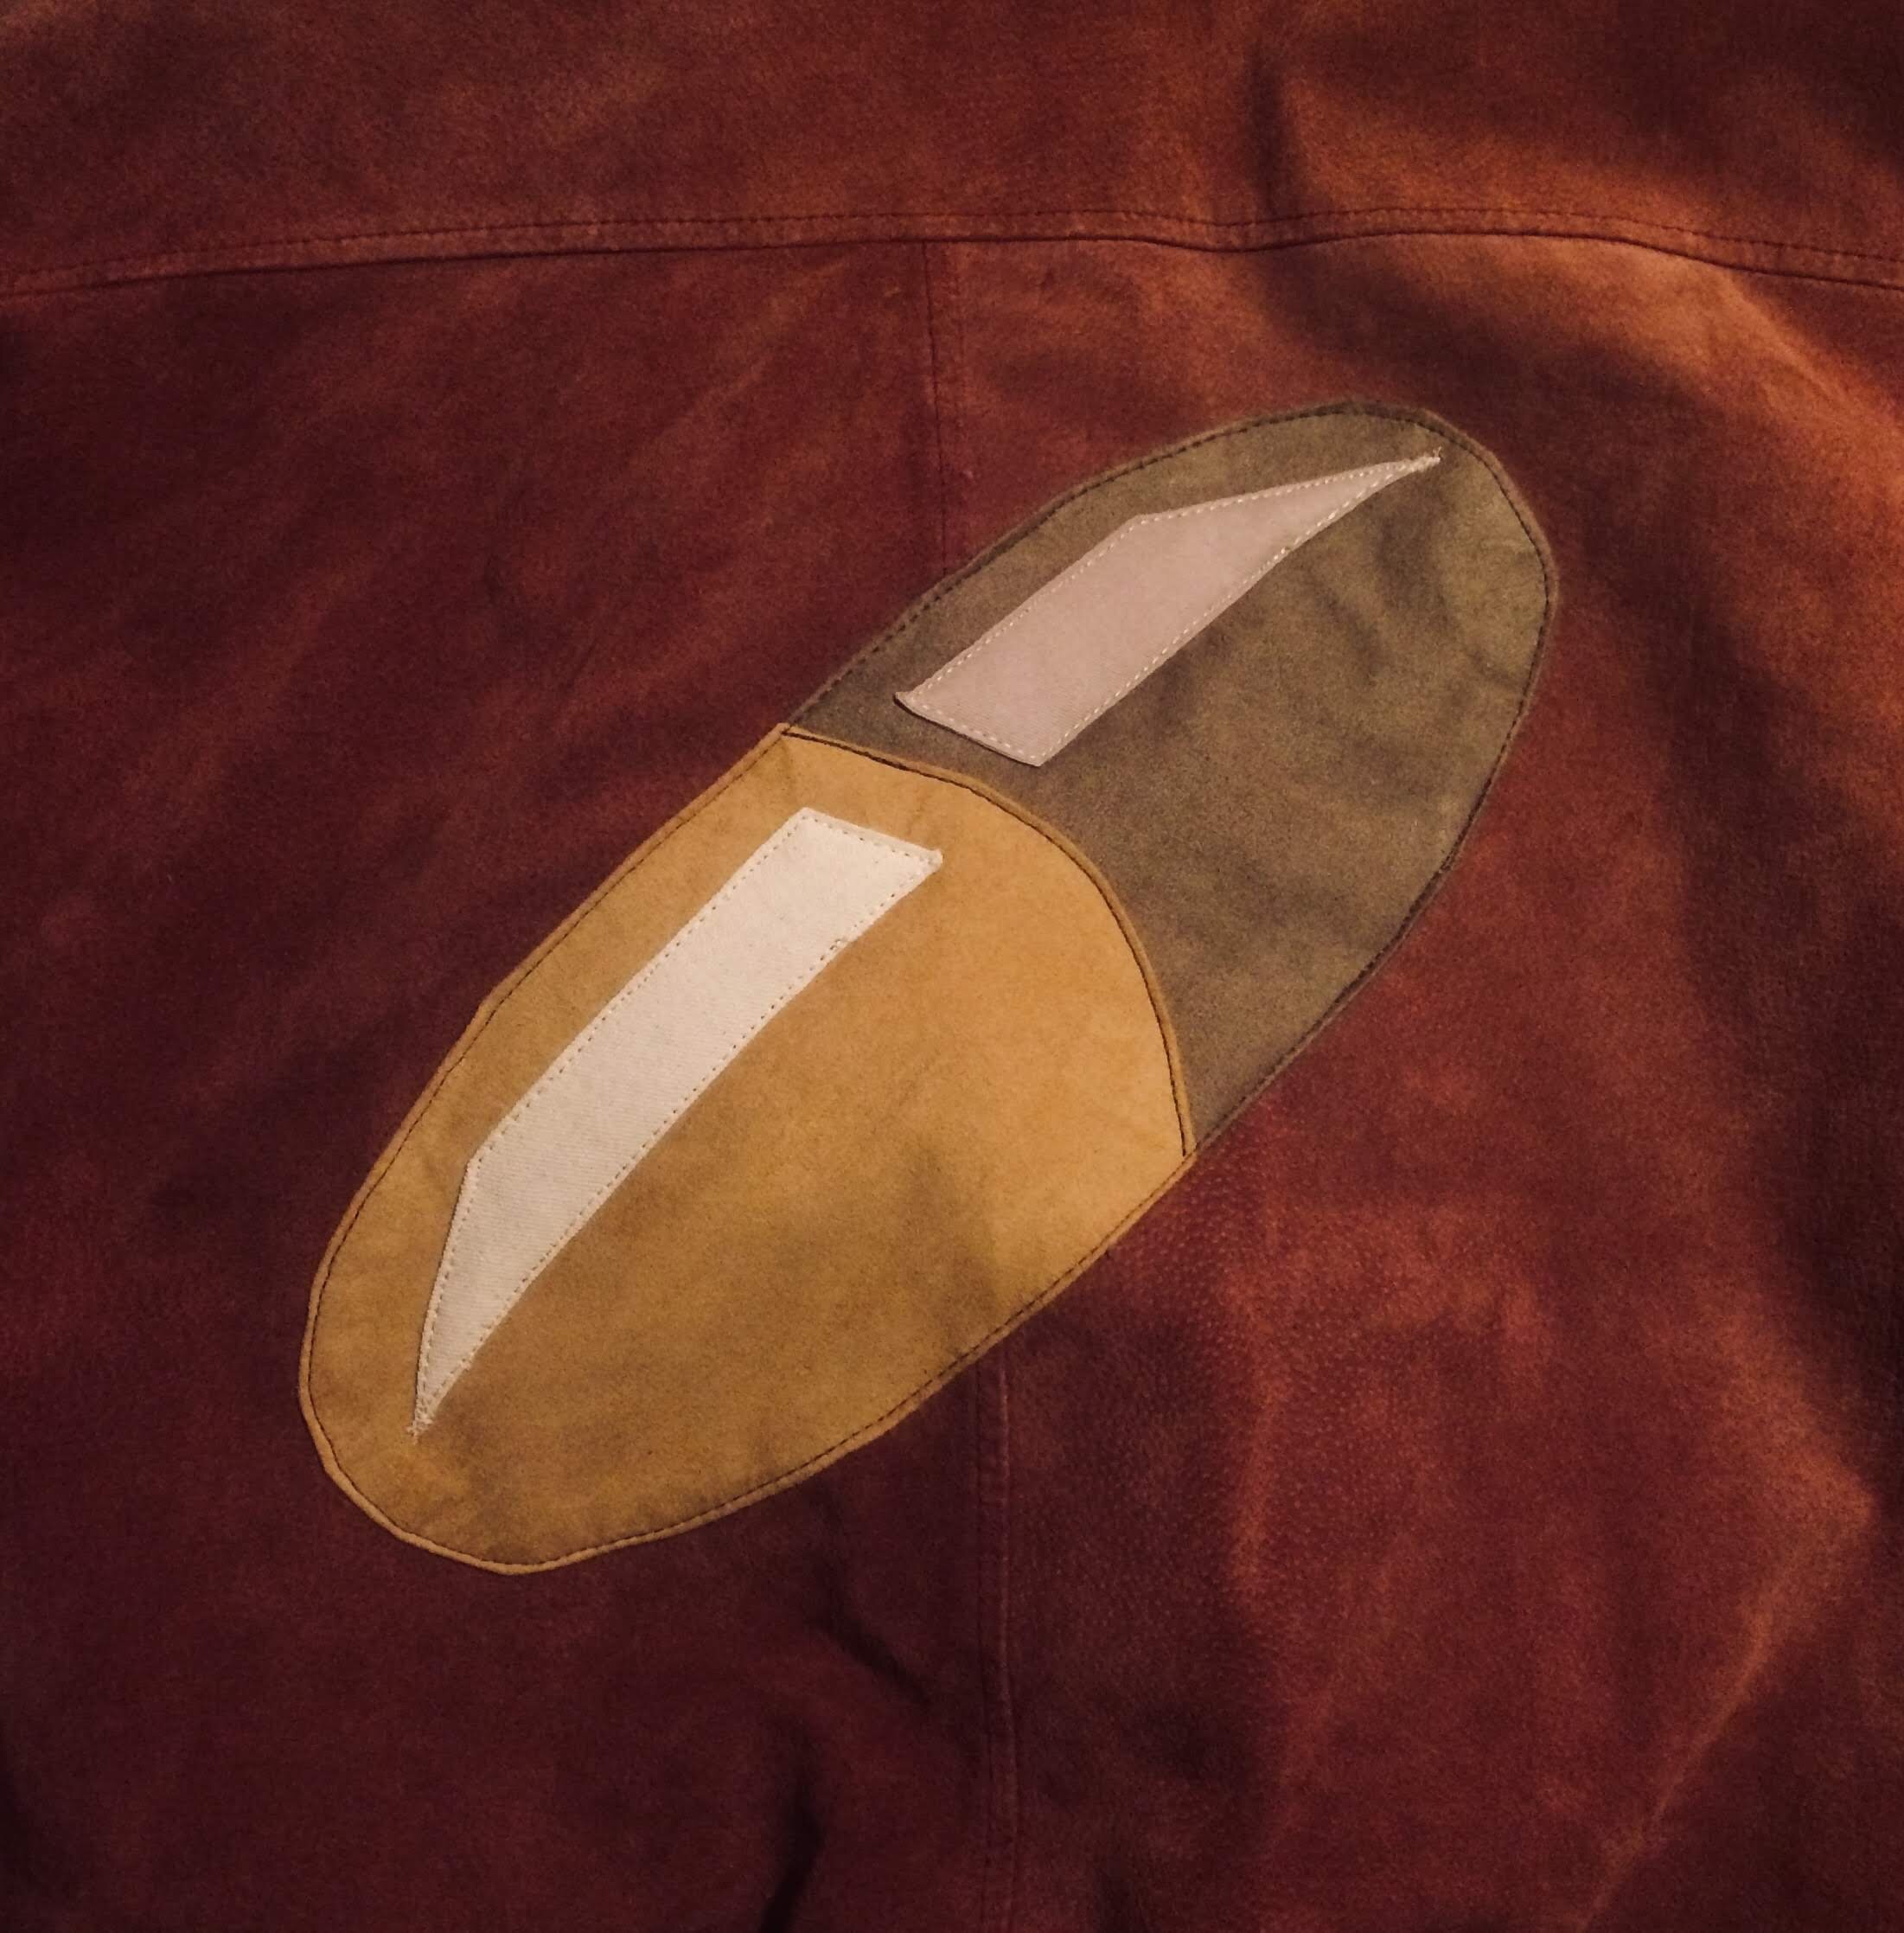 The Capsules Emblem (Kaneda’s Jacket)